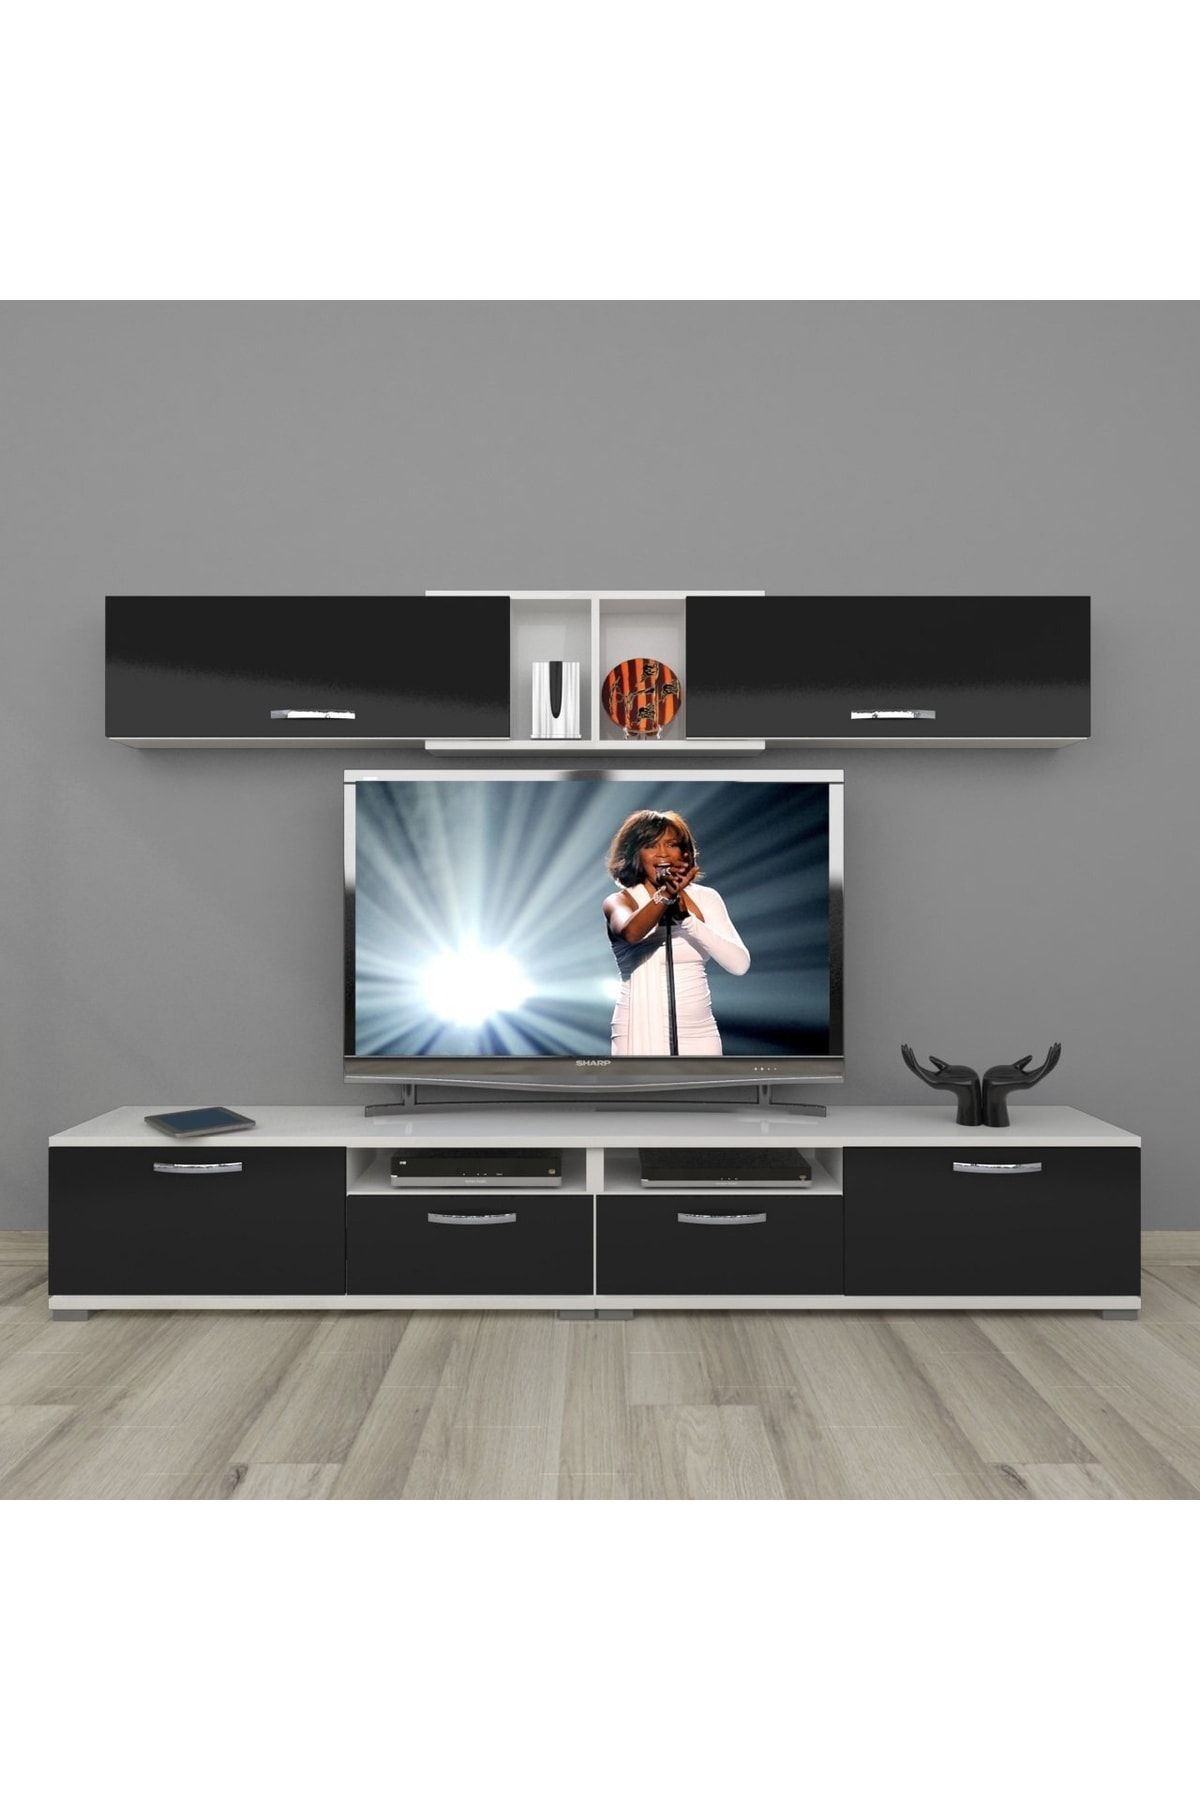 Decoraktiv Eko 5220 Slm Krom Ayaklı Tv Ünitesi Tv Sehpası - Beyaz - Siyah